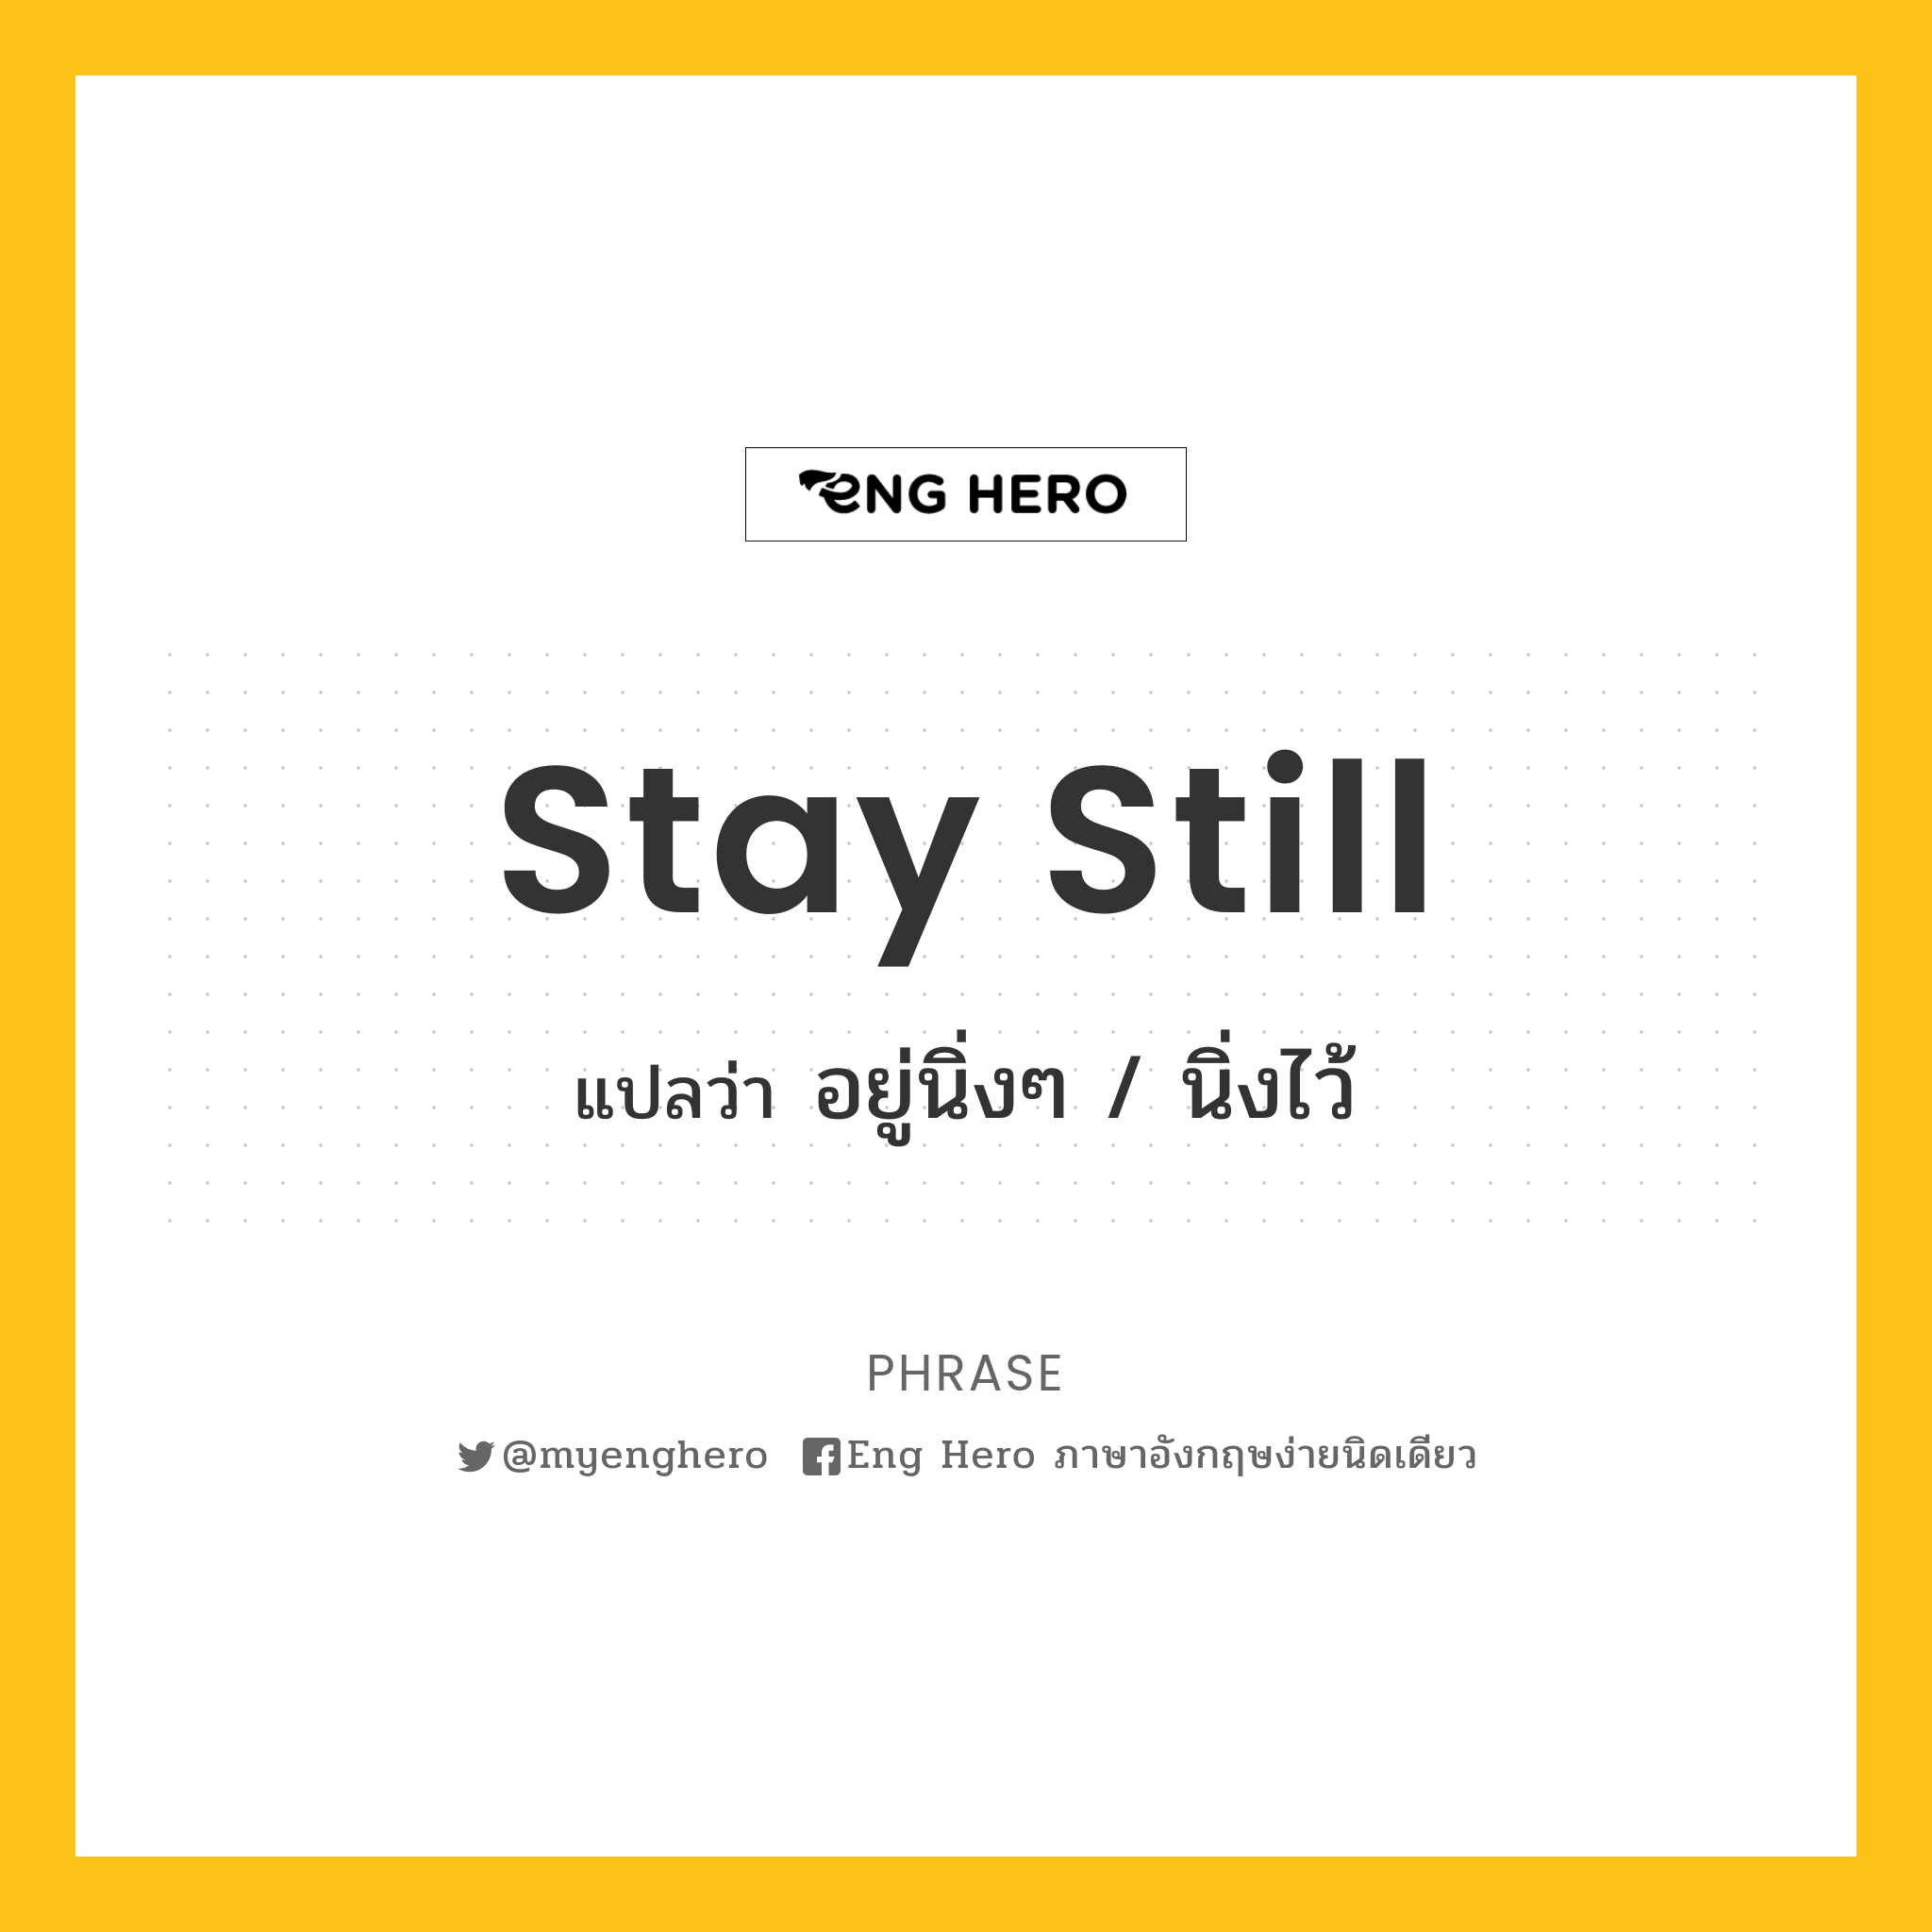 Stay still